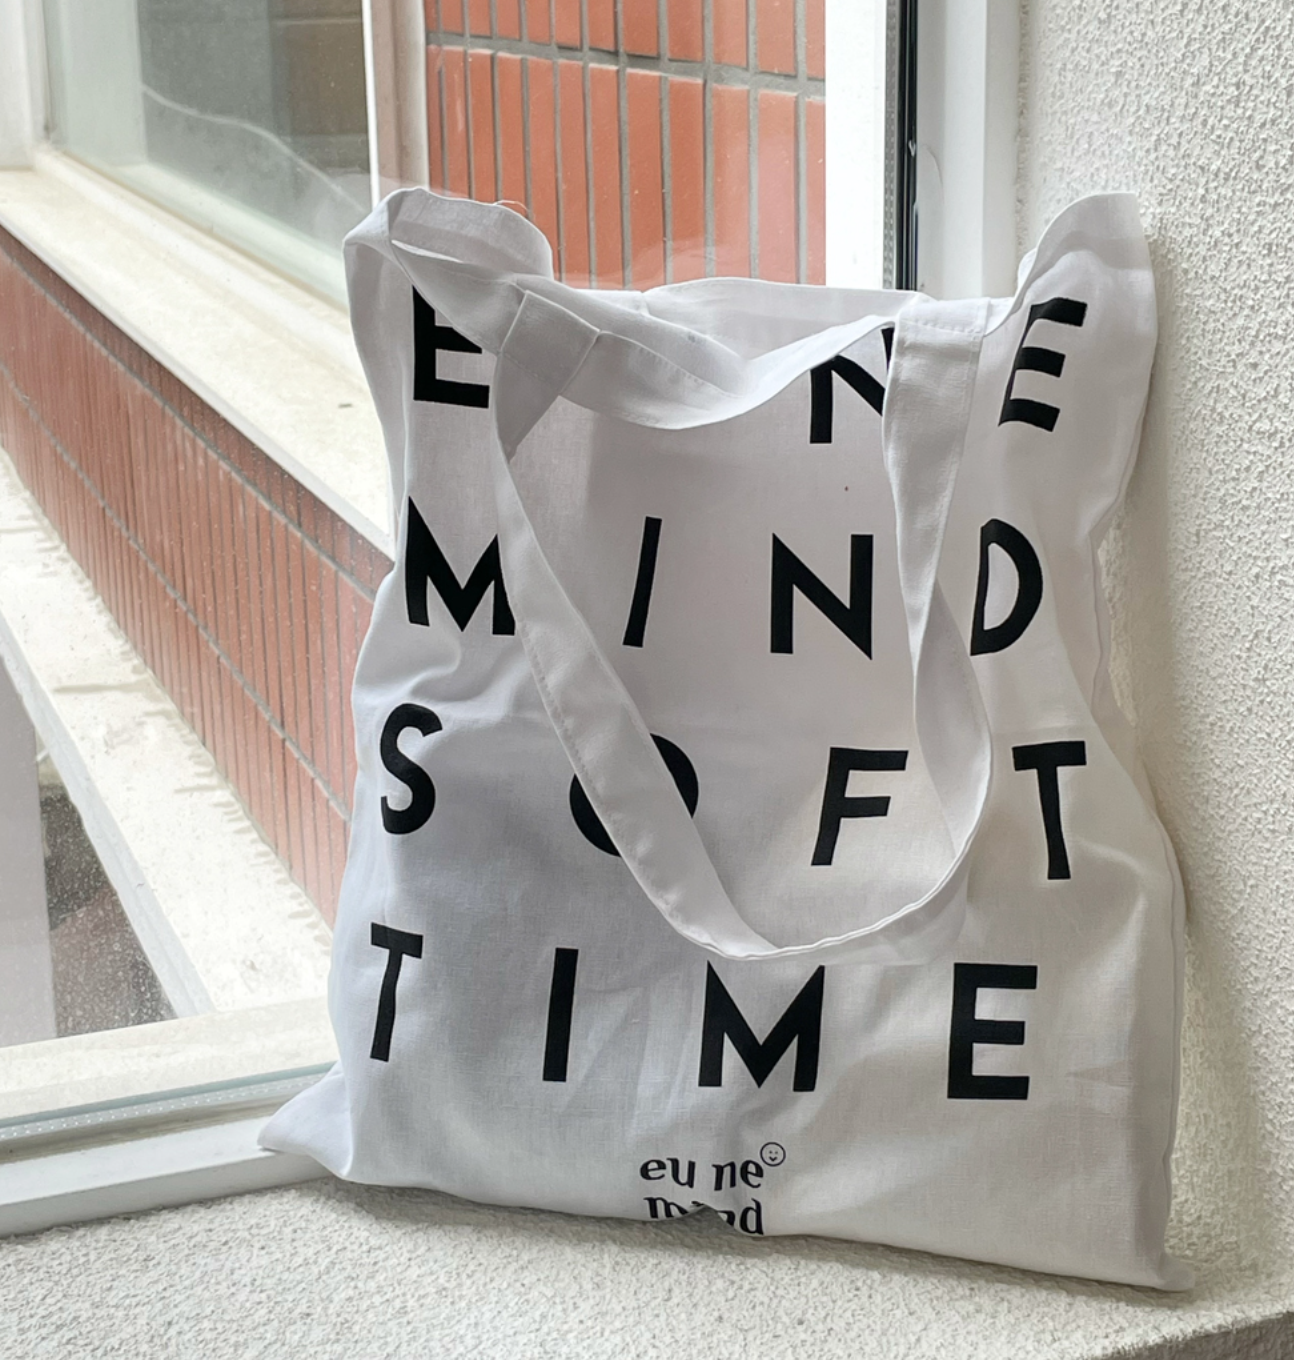 [eune mind] Typography Linen Bag